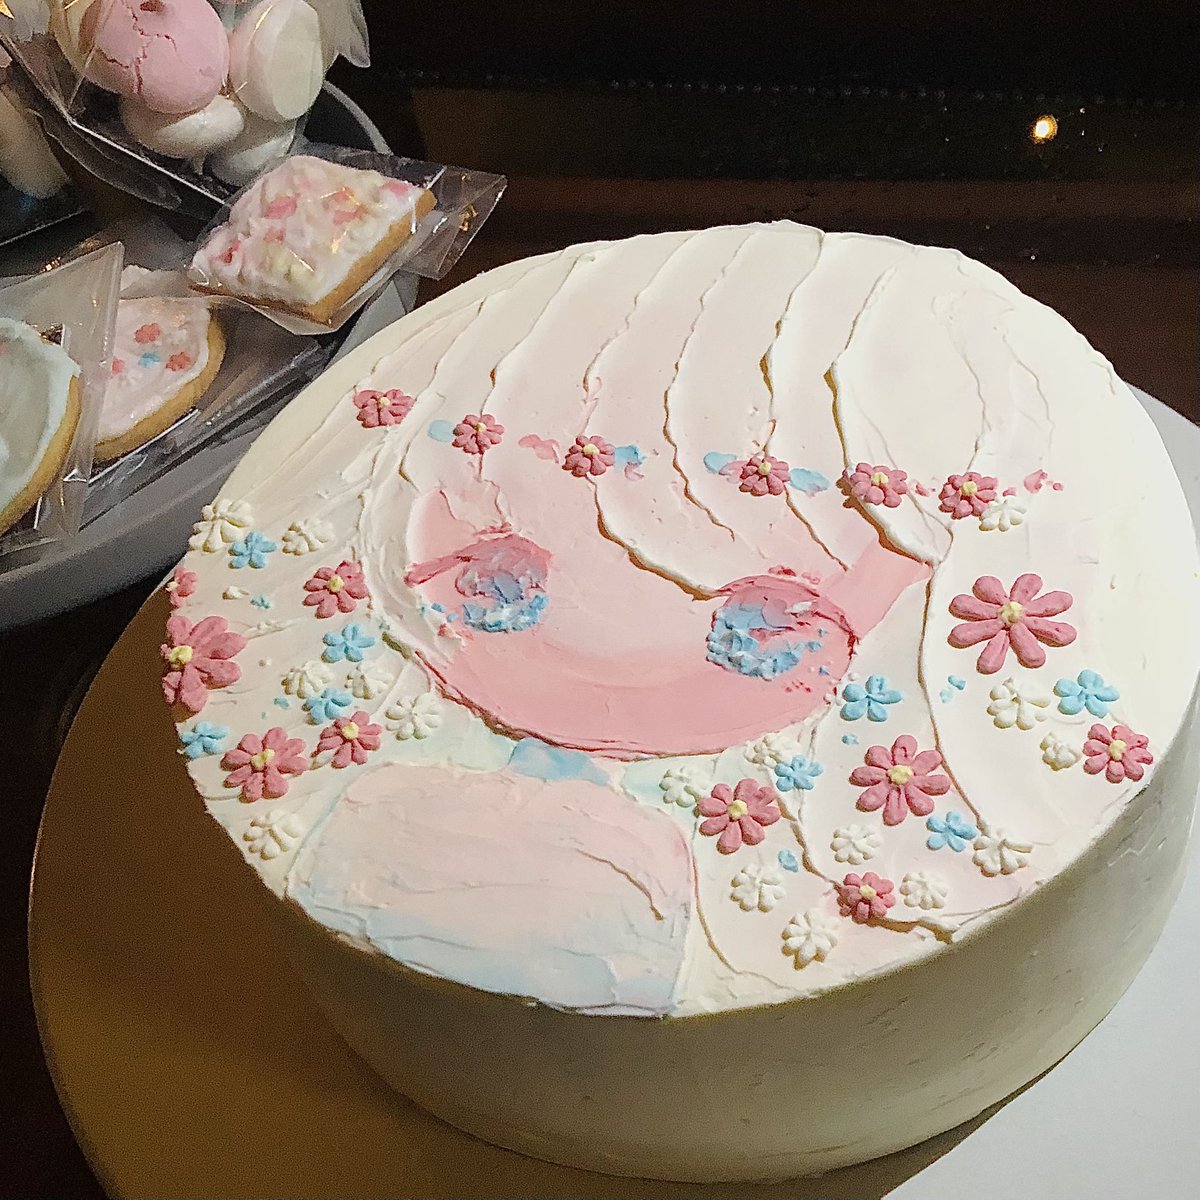 「なんと!私の作品がケーキとお菓子になりました😳パティシエさんに作っていただいた」|小田望楓‎‎✿Mifuu Odaのイラスト